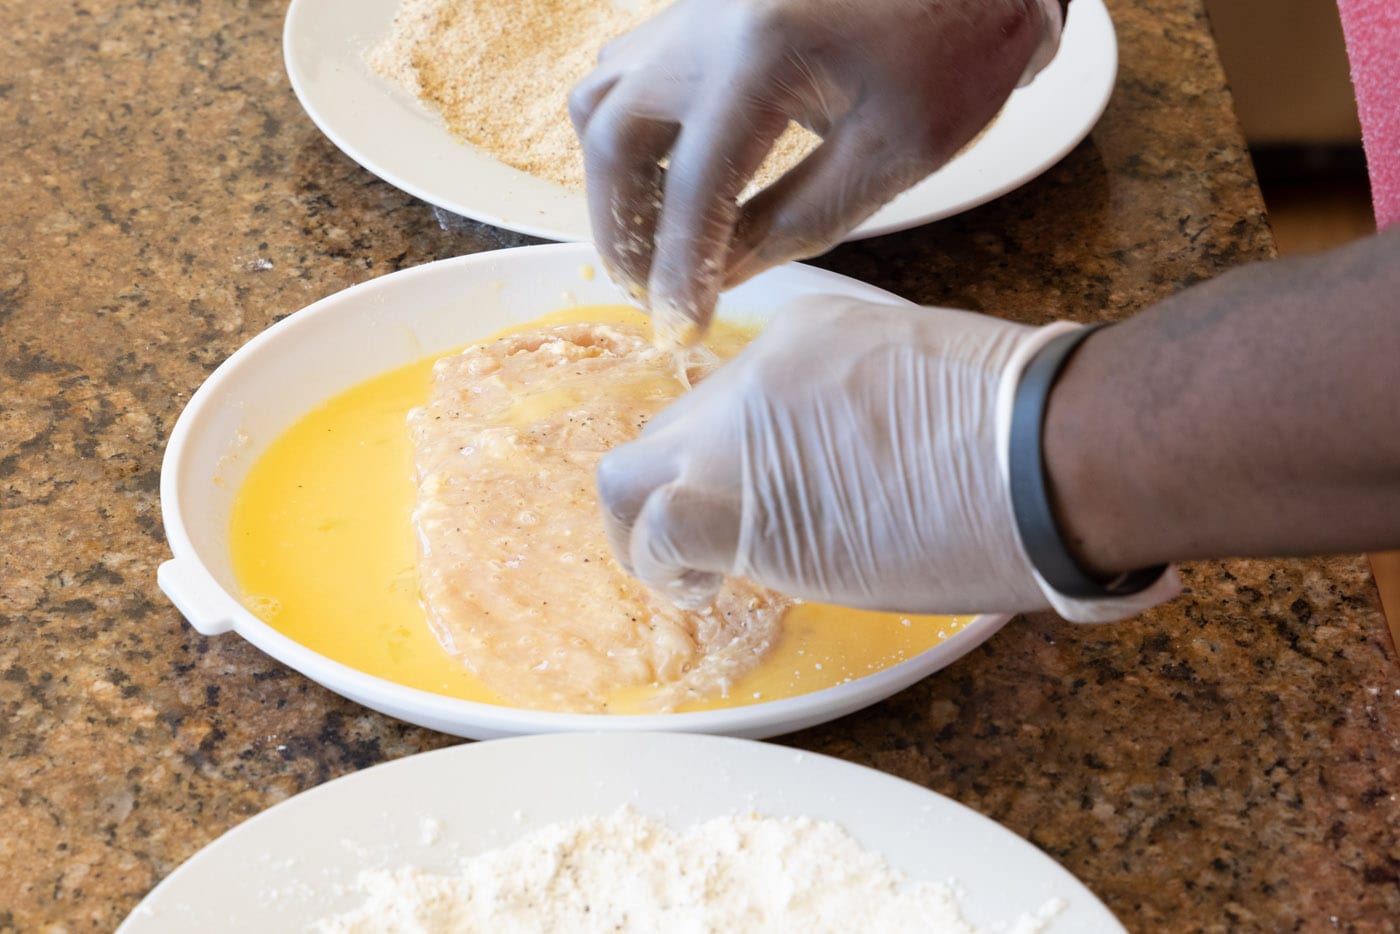 dredging flour chicken cutlet in egg